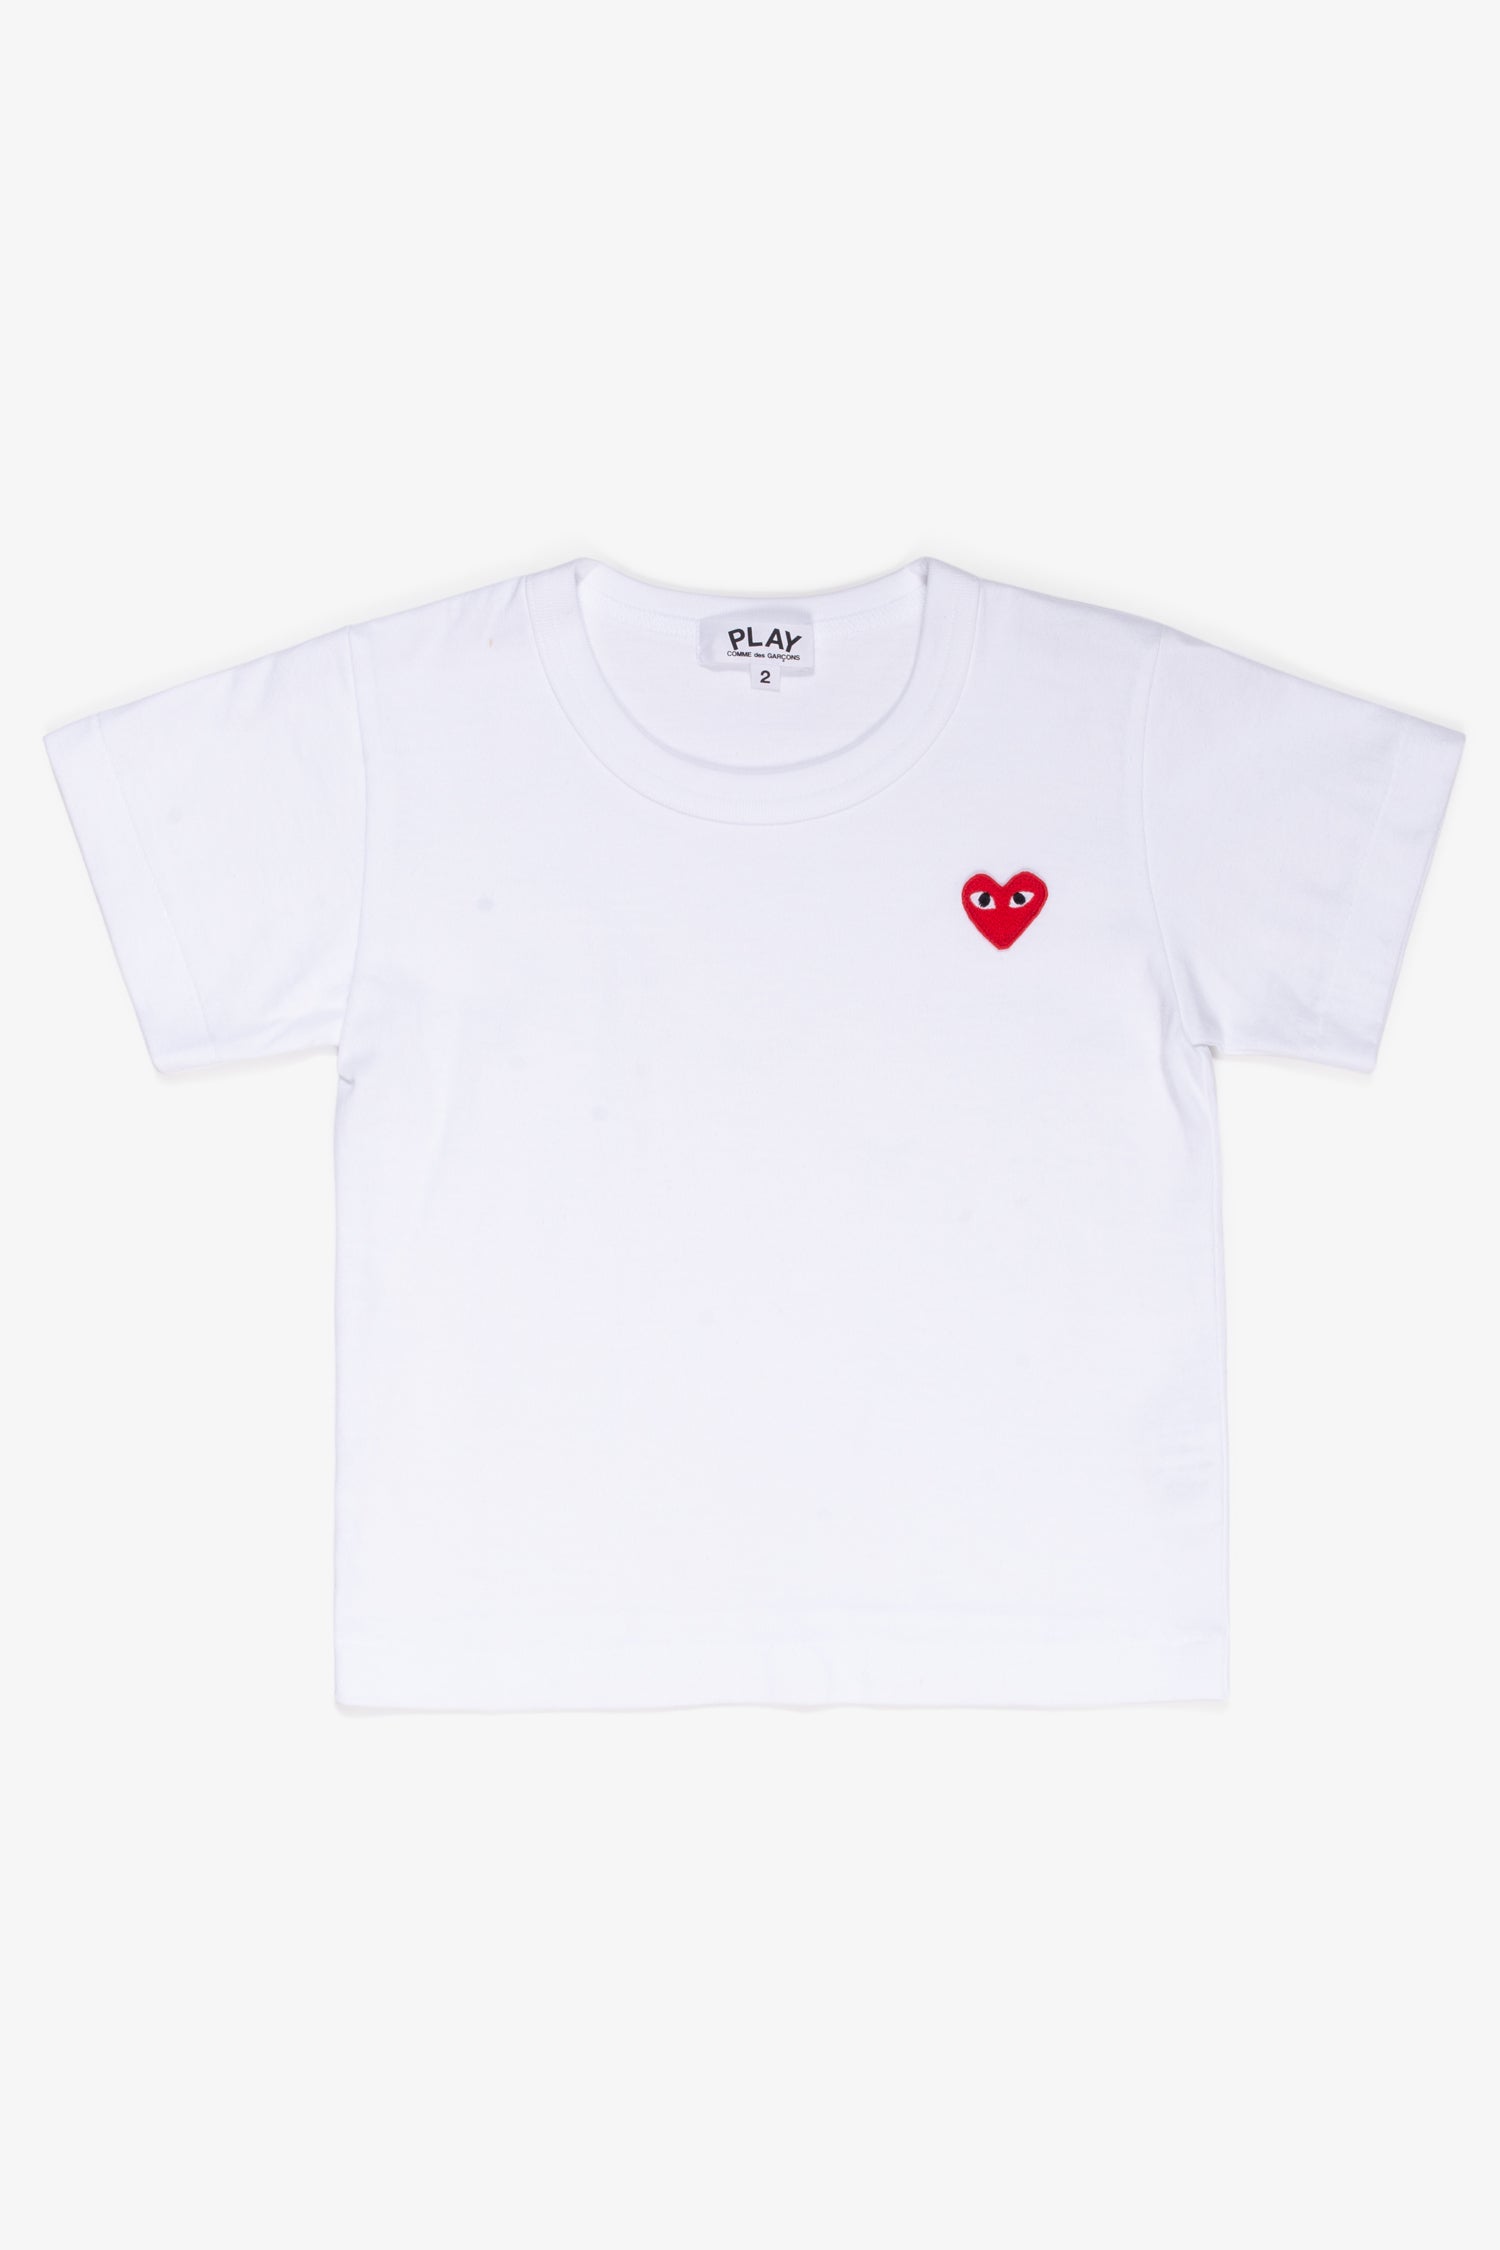 Selectshop FRAME - COMME DES GARCONS PLAY Red Heart T-Shirt Kids Dubai